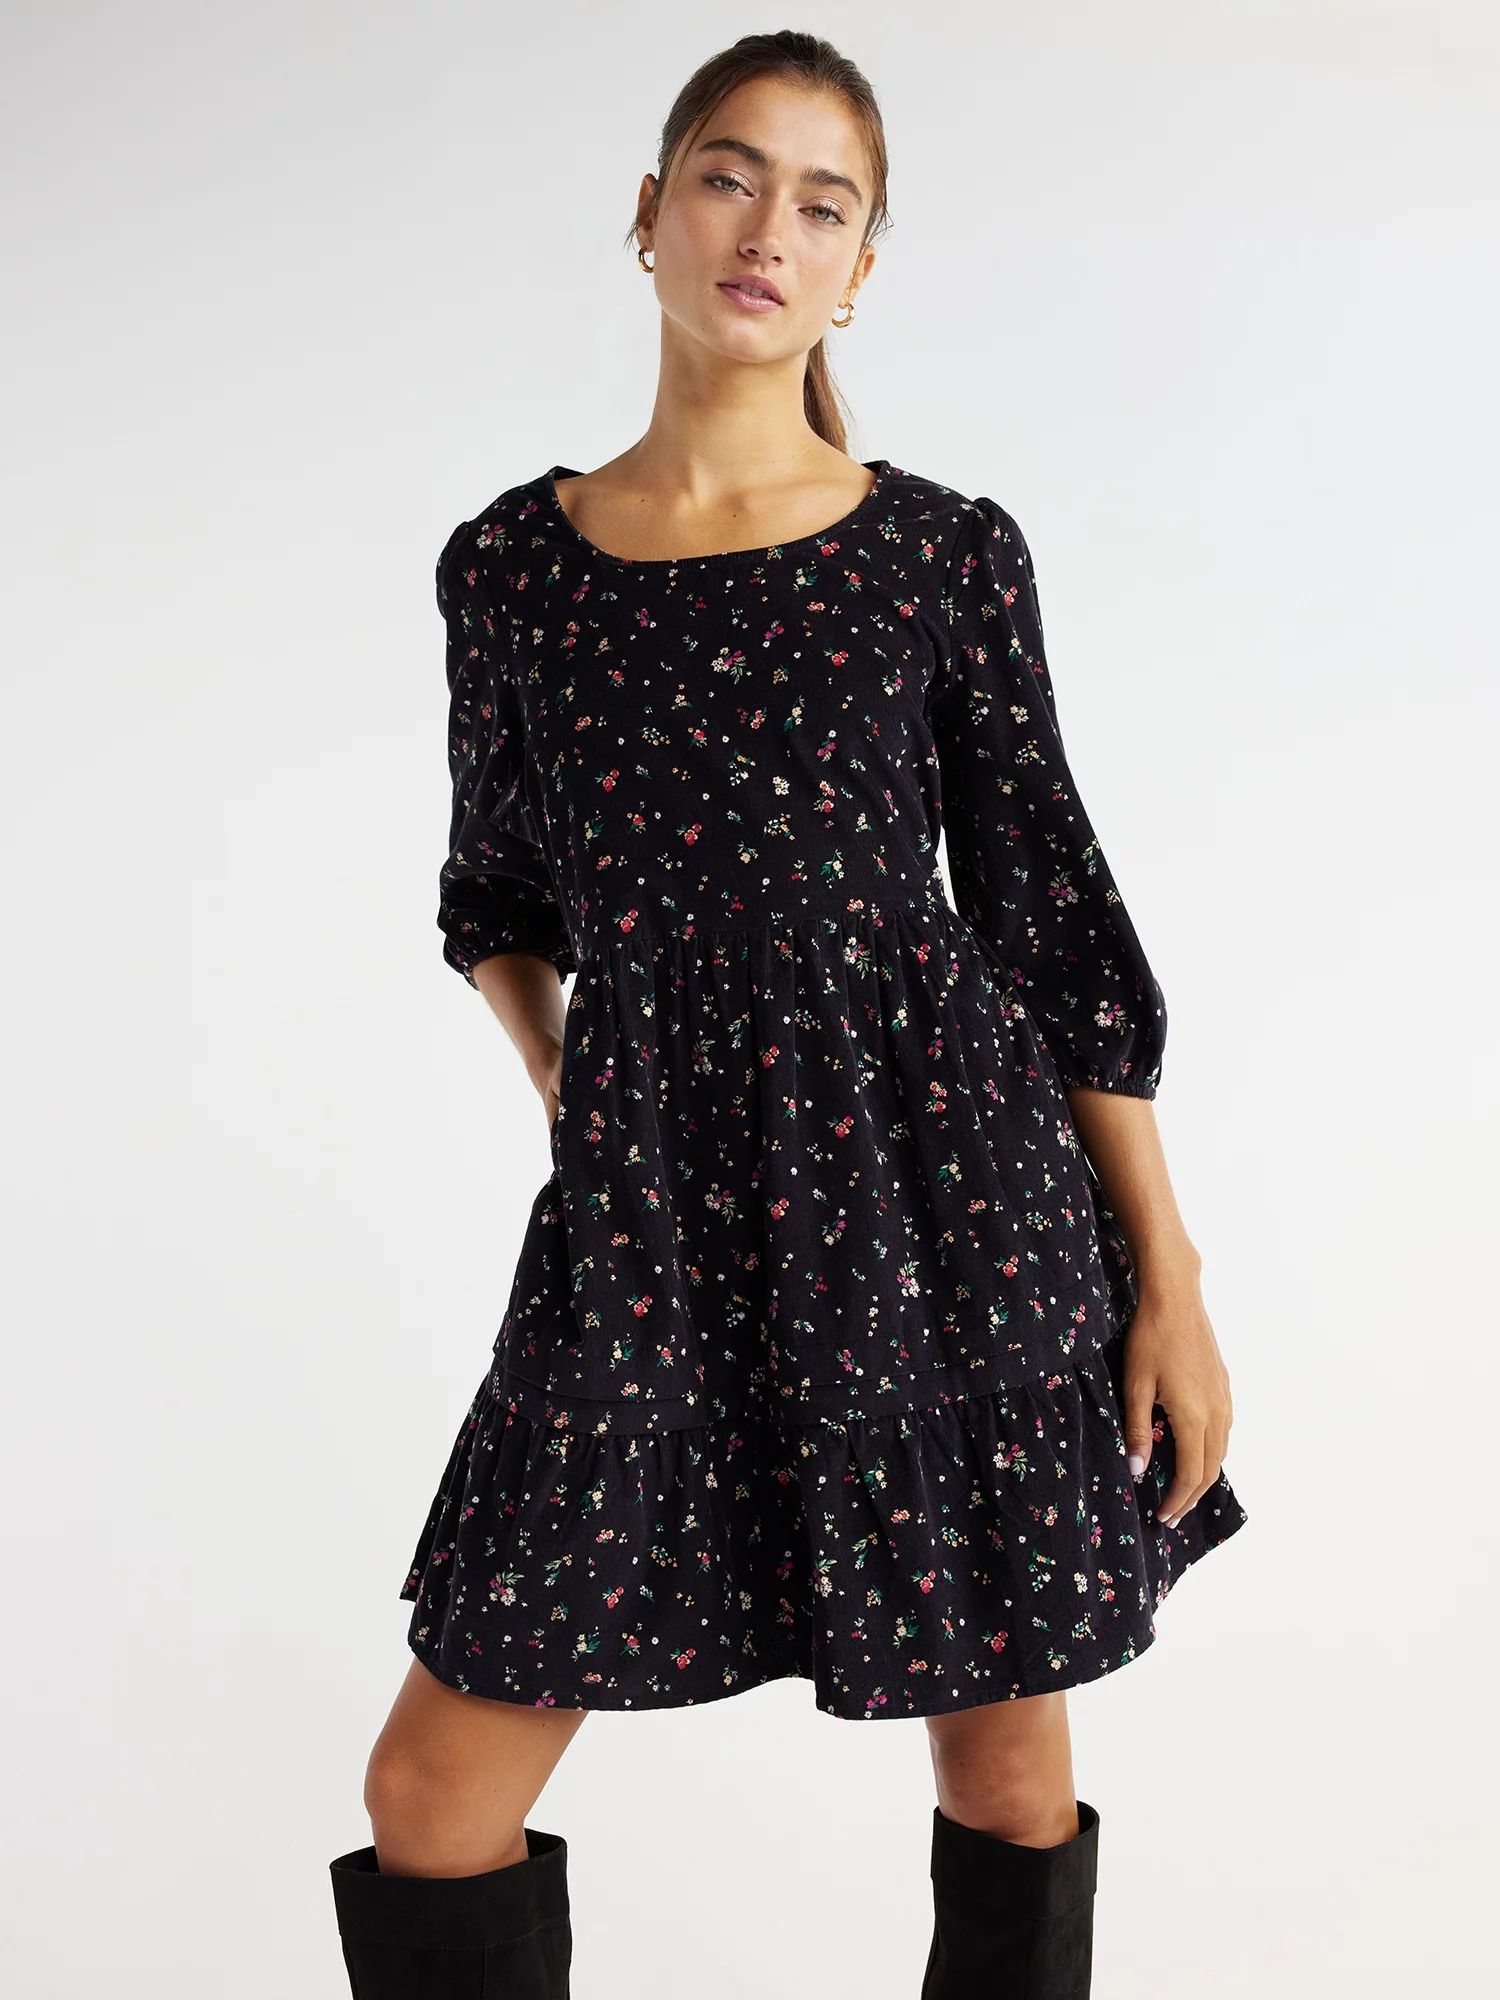 Time and Tru Women's Corduroy Dress with 3/4-Length Sleeves, Sizes XS-XXXL | Walmart (US)